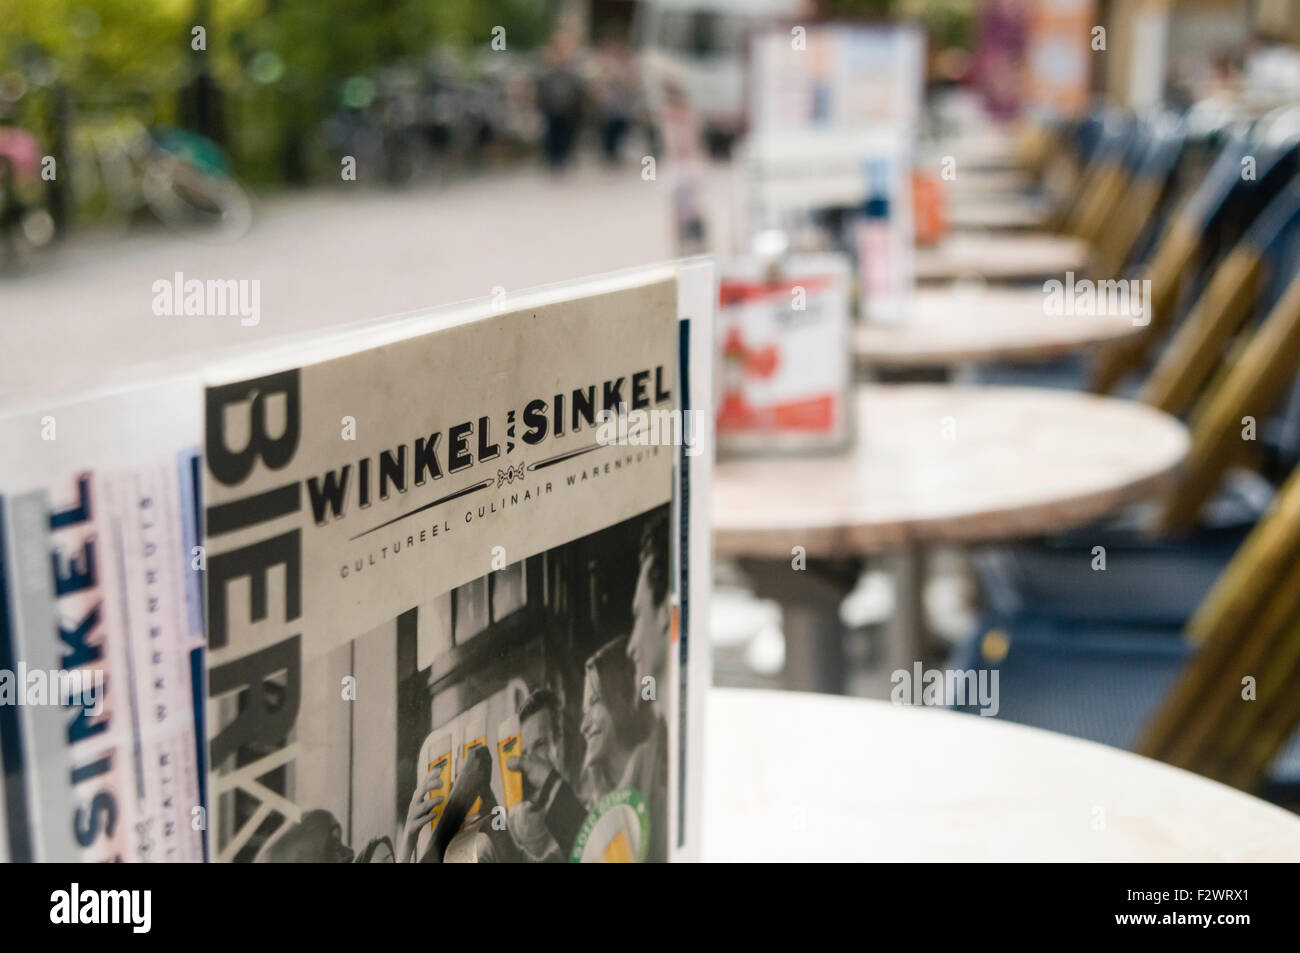 Tische draußen Winkel van Sinkel, ein beliebtes Restaurant und Café in Utrecht, Niederlande Stockfoto